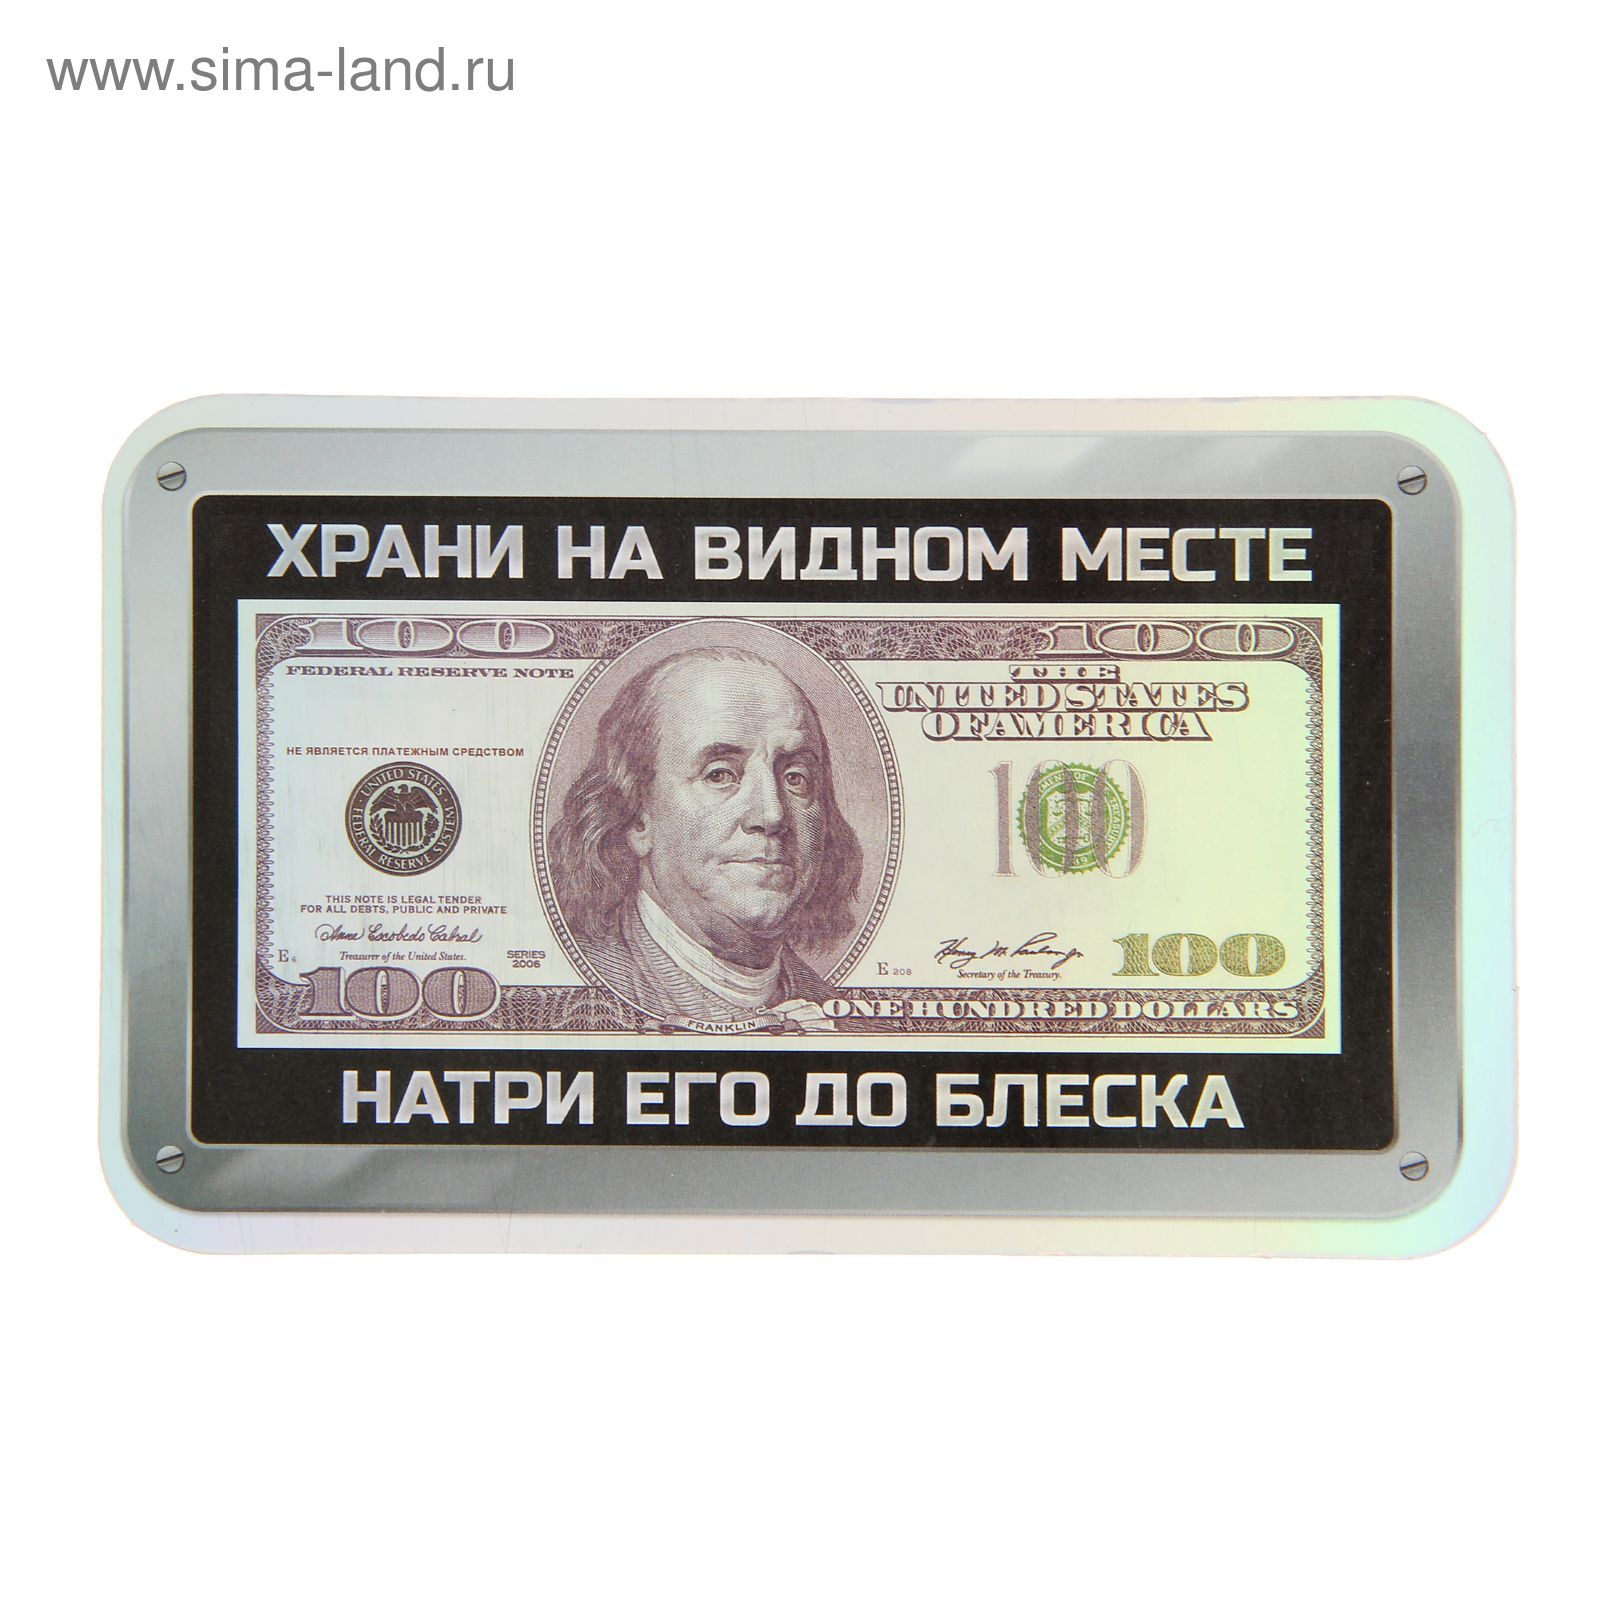 119 долларов в рублях